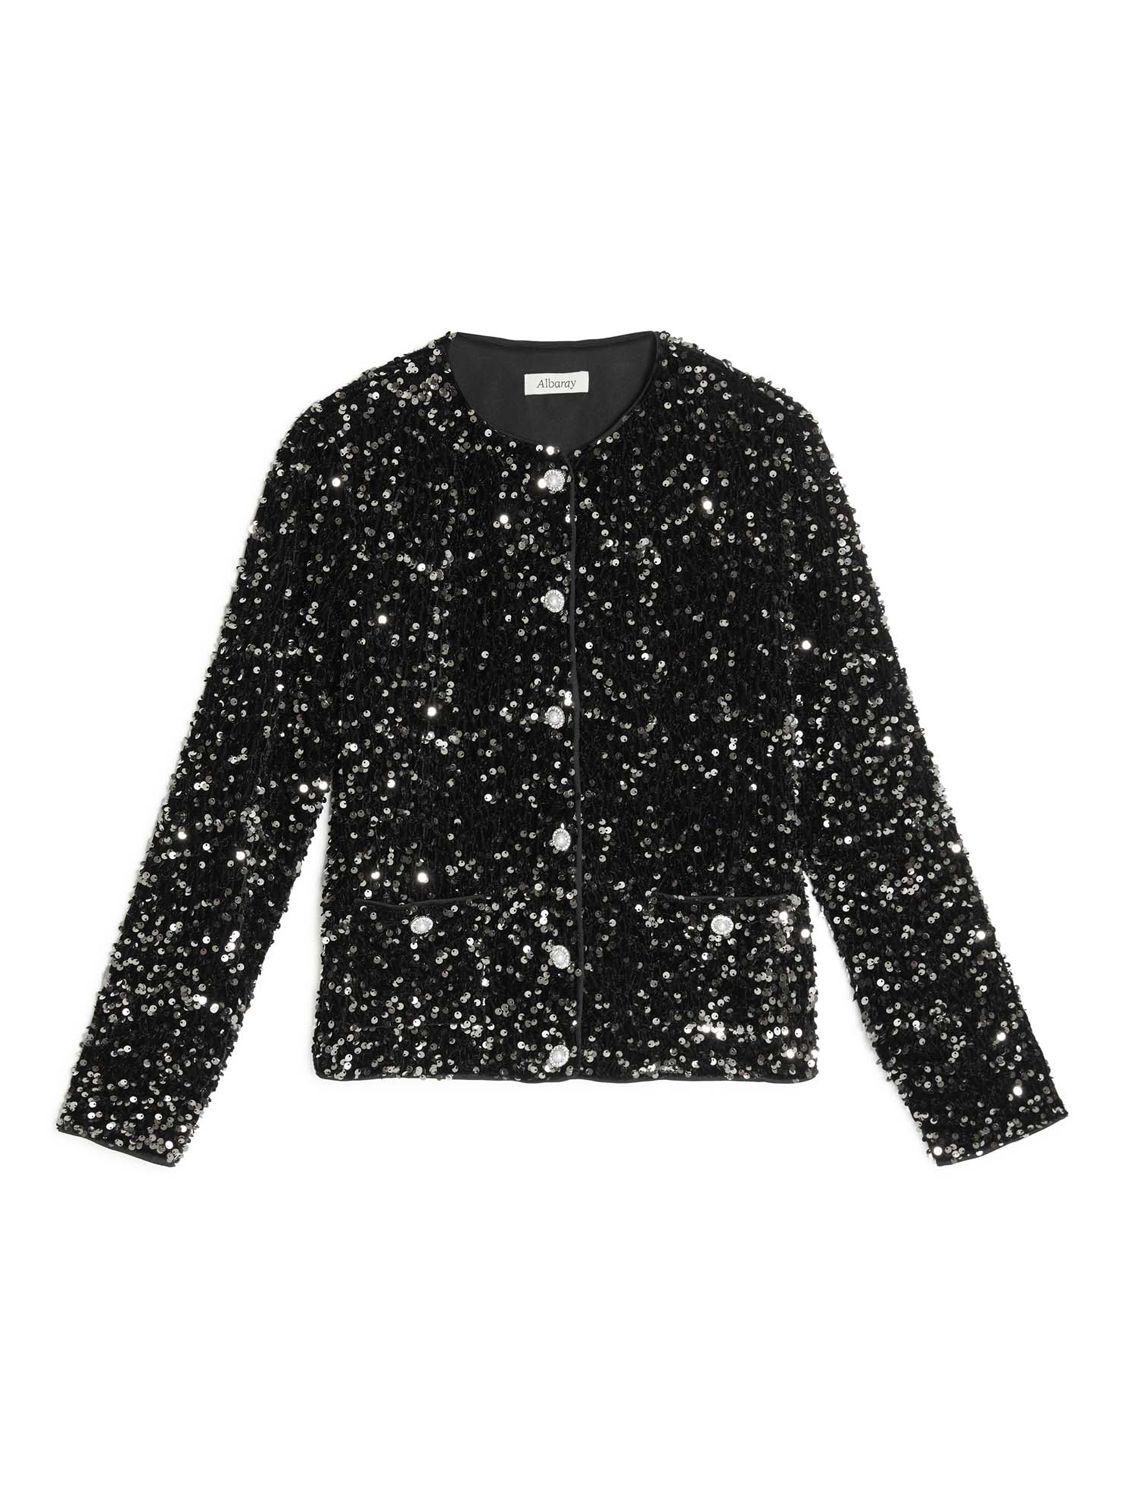 Buy Albaray Velvet Sequin Cropped Jacket, Black Online at johnlewis.com